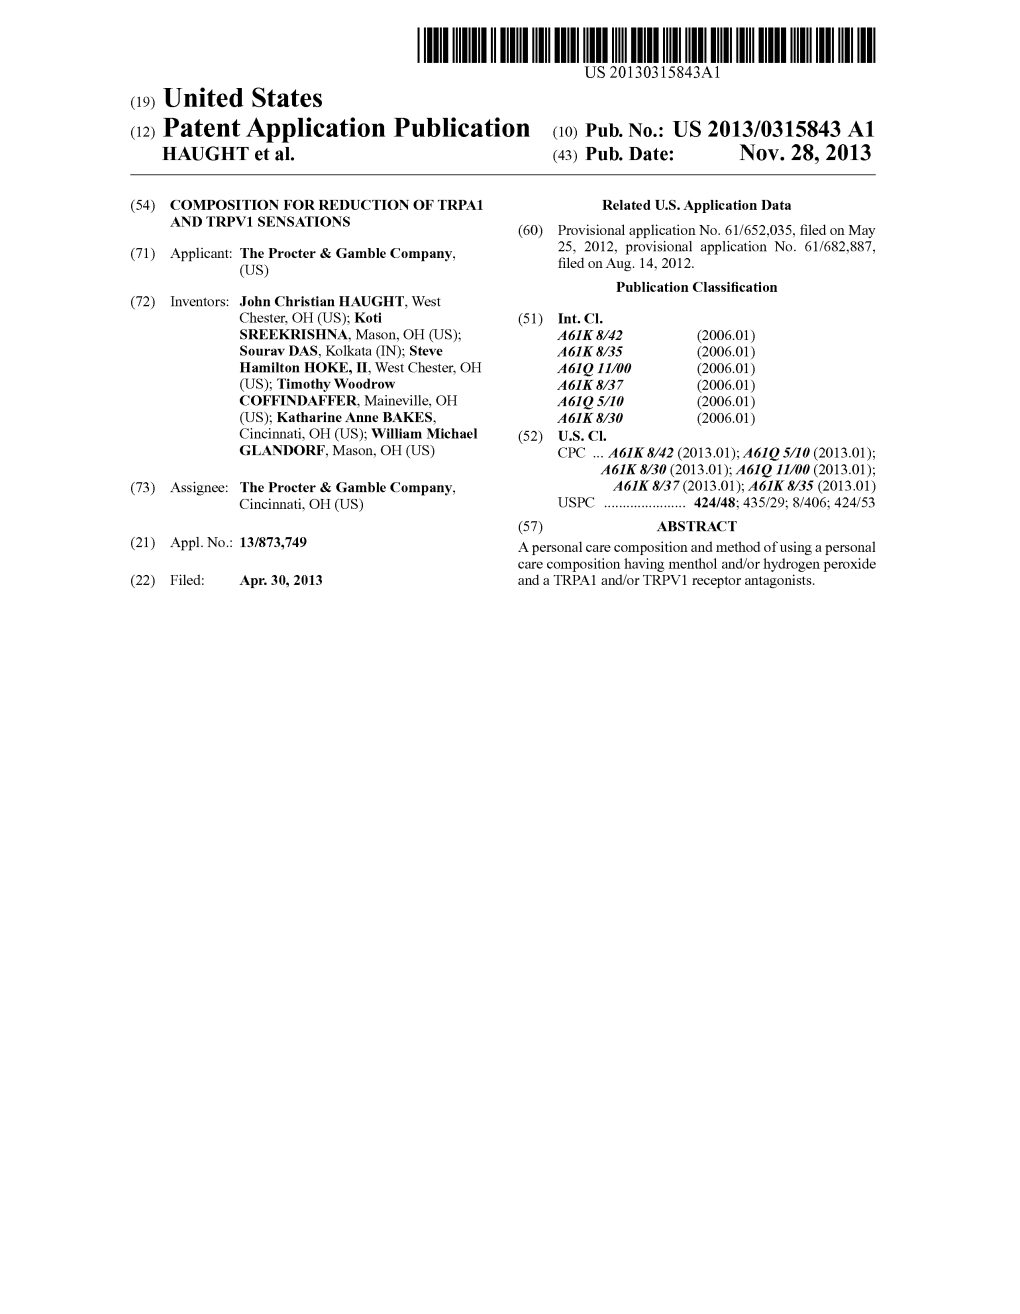 (12) Patent Application Publication (10) Pub. No.: US 2013/0315843 A1 HAUGHT Et Al